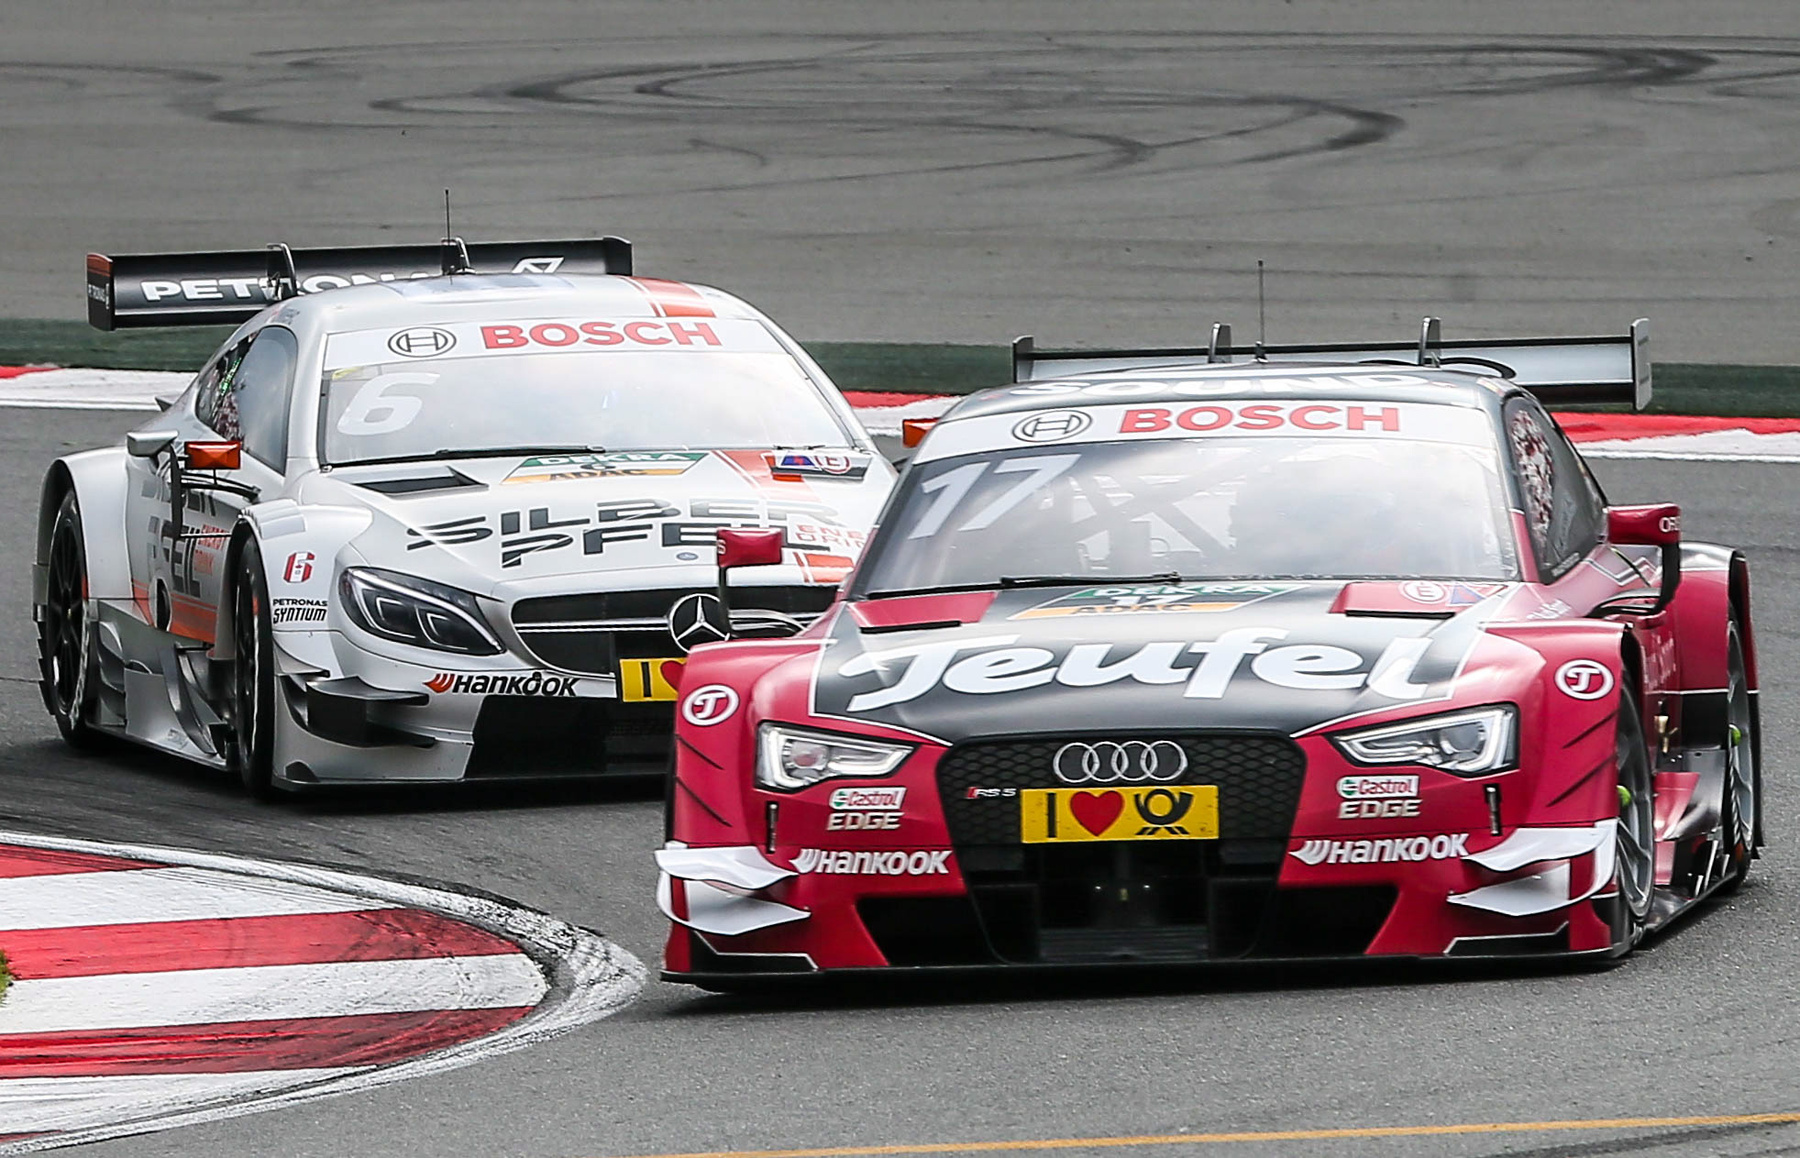 A DTM Audija és Mercedese